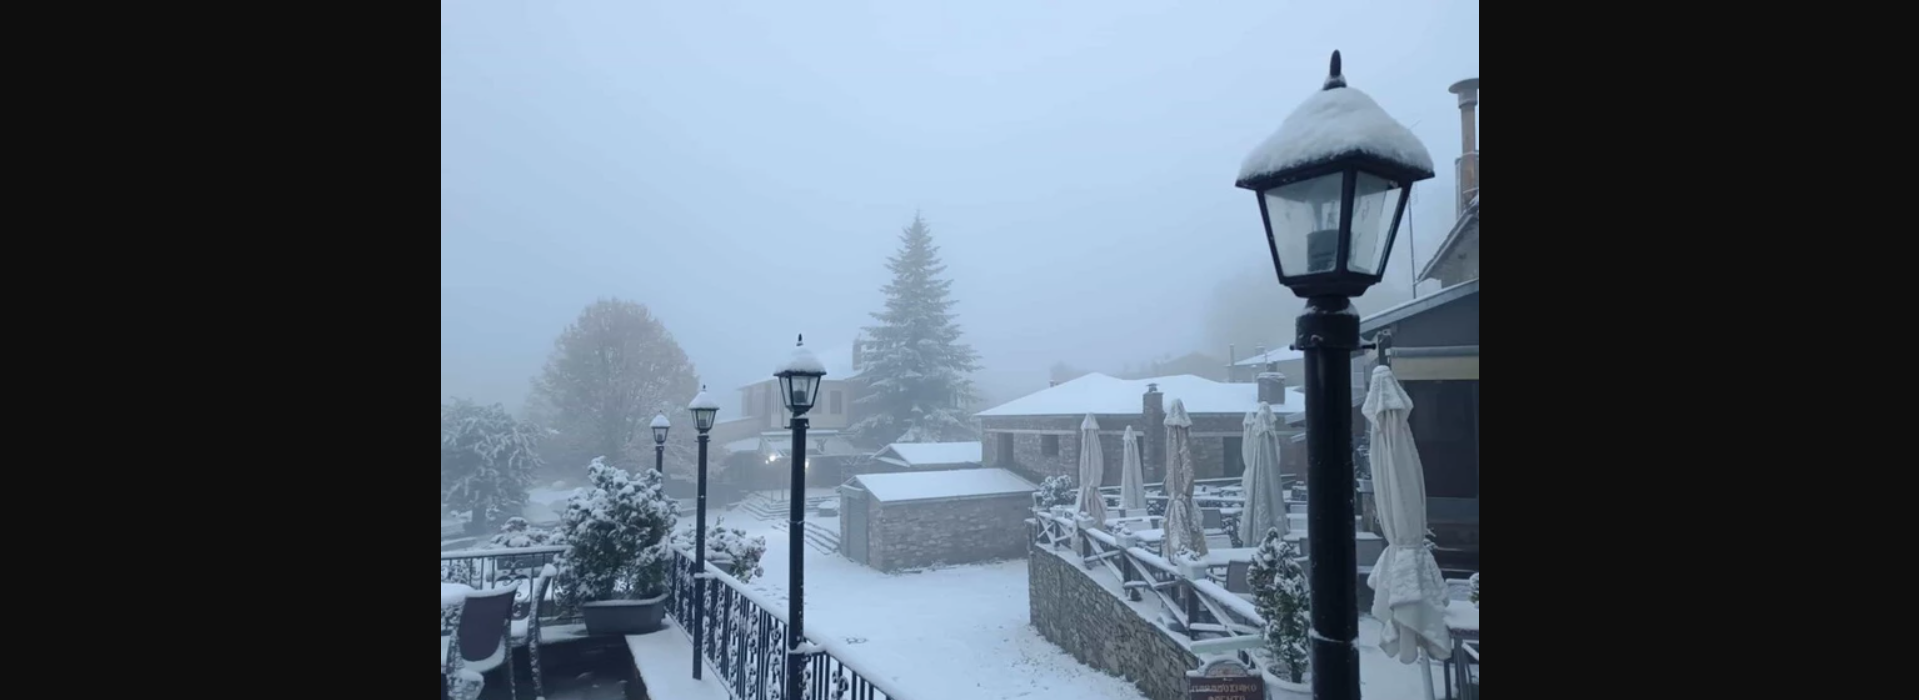 Έπεσαν τα πρώτα χιόνια στη χώρα – Εντυπωσιακές εικόνες από τη Βόρεια Ελλάδα